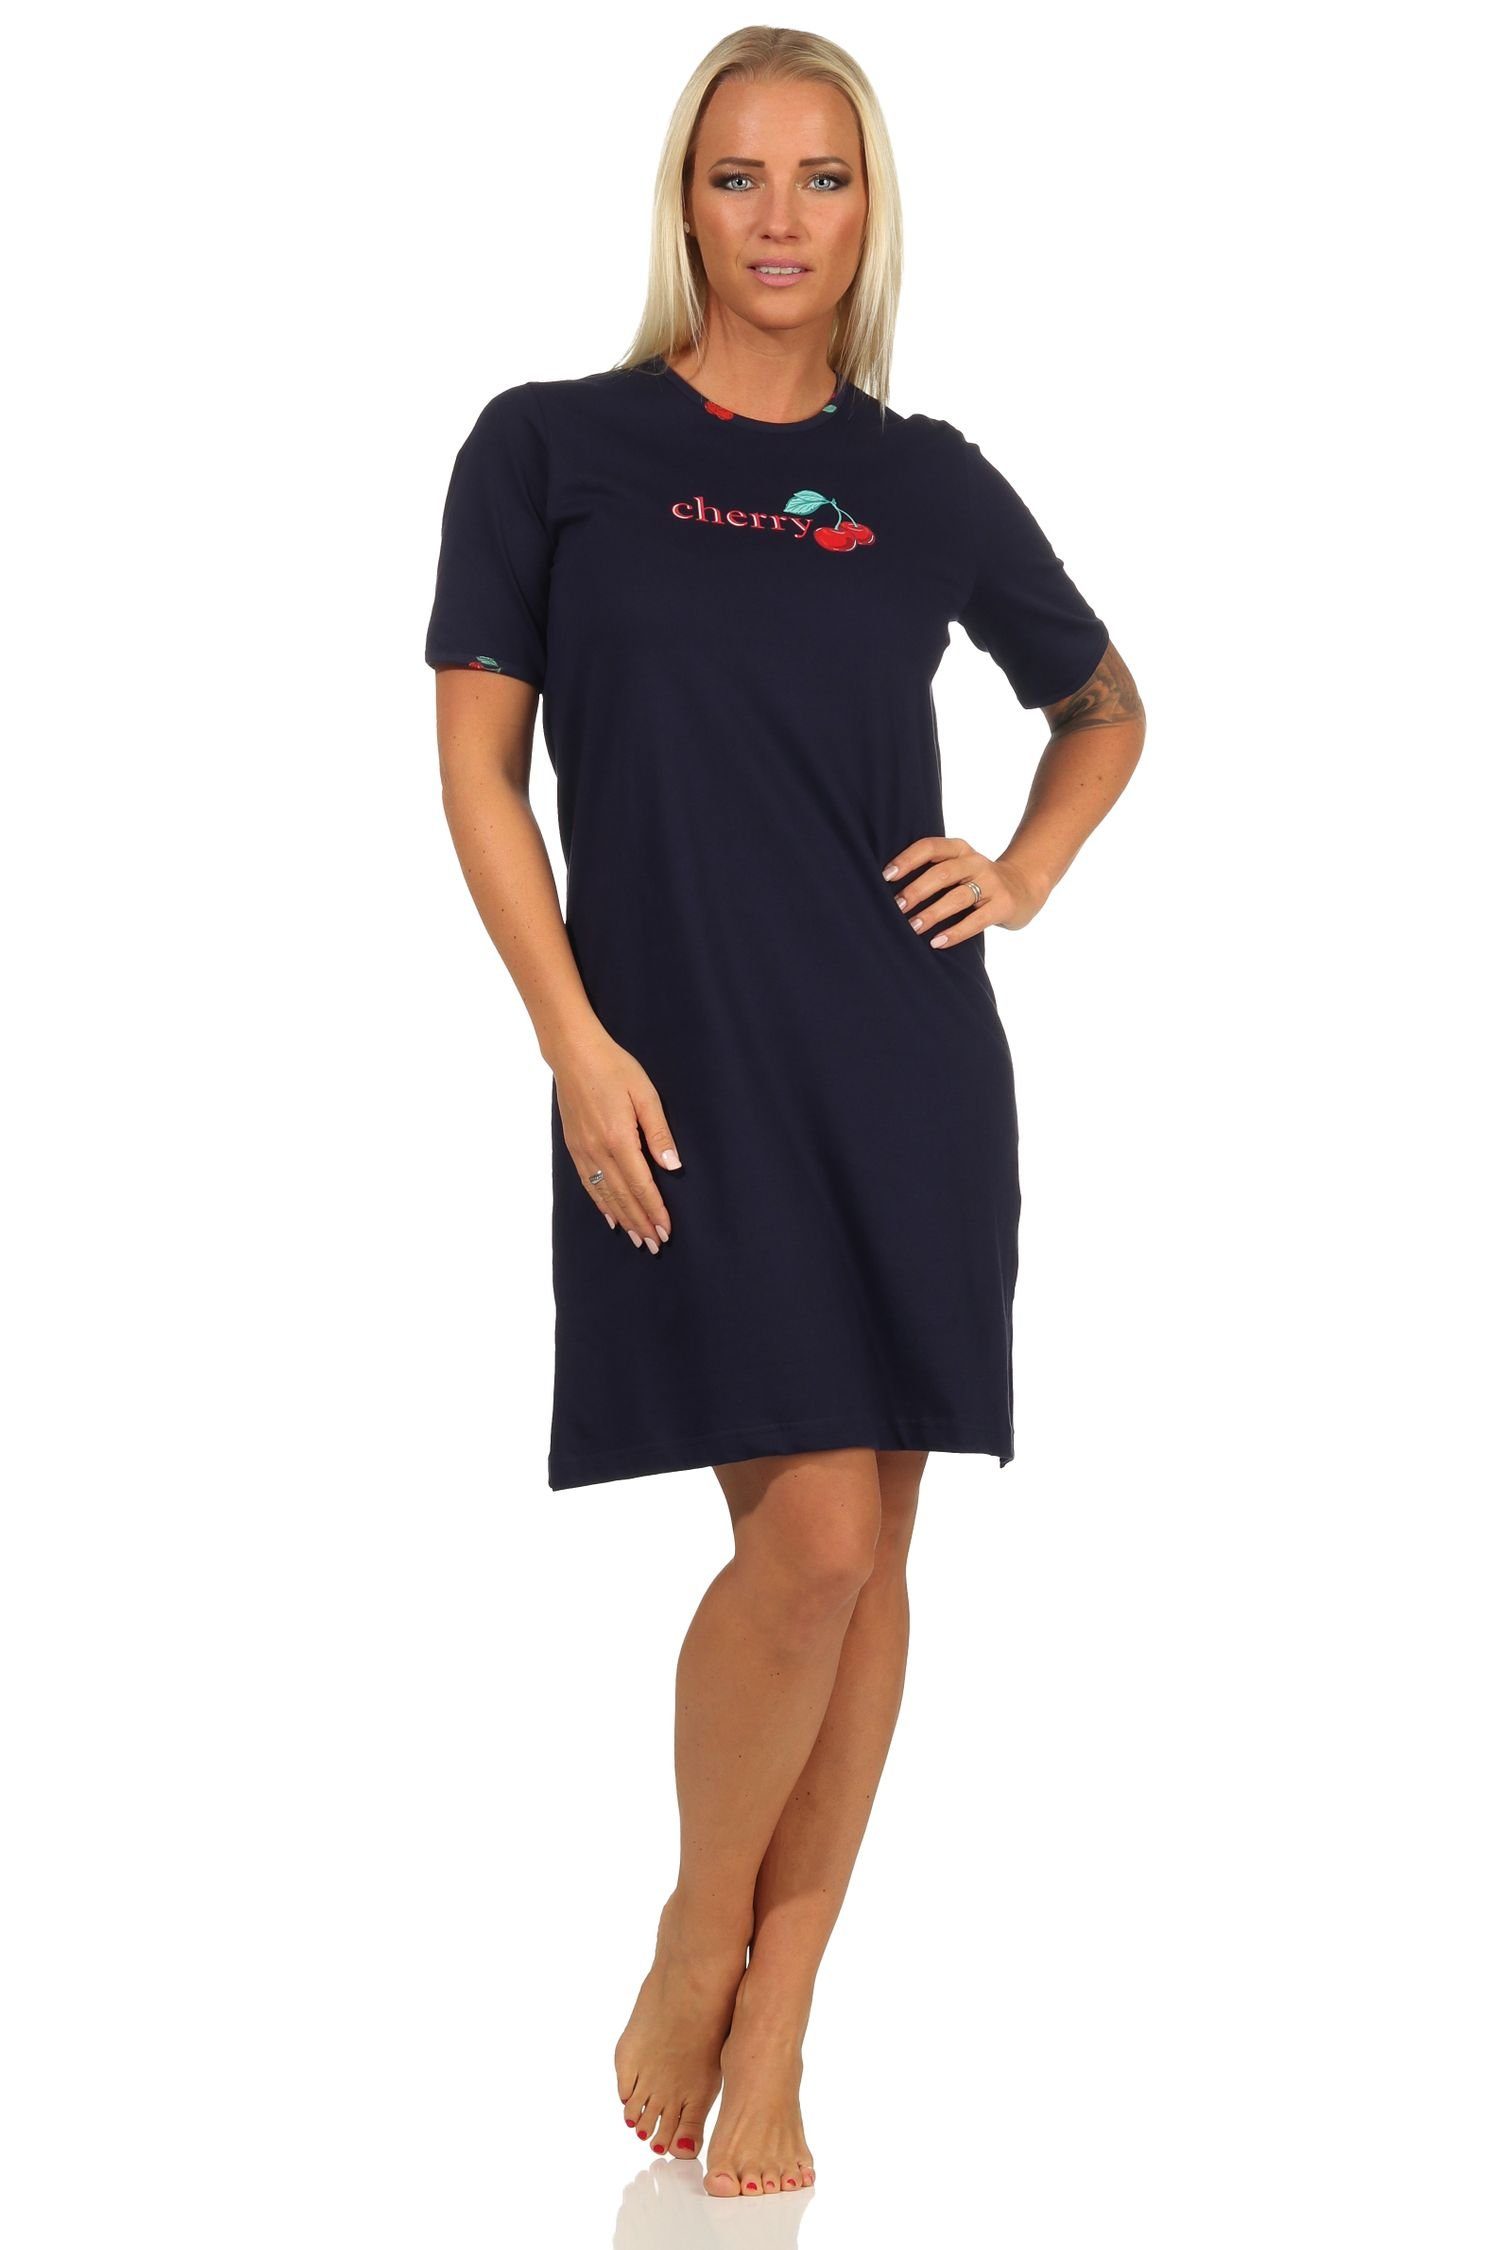 Normann Nachthemd Süsses kurzarm Damen Nachthemd mit Kirschen als Motiv – 112 535 marine